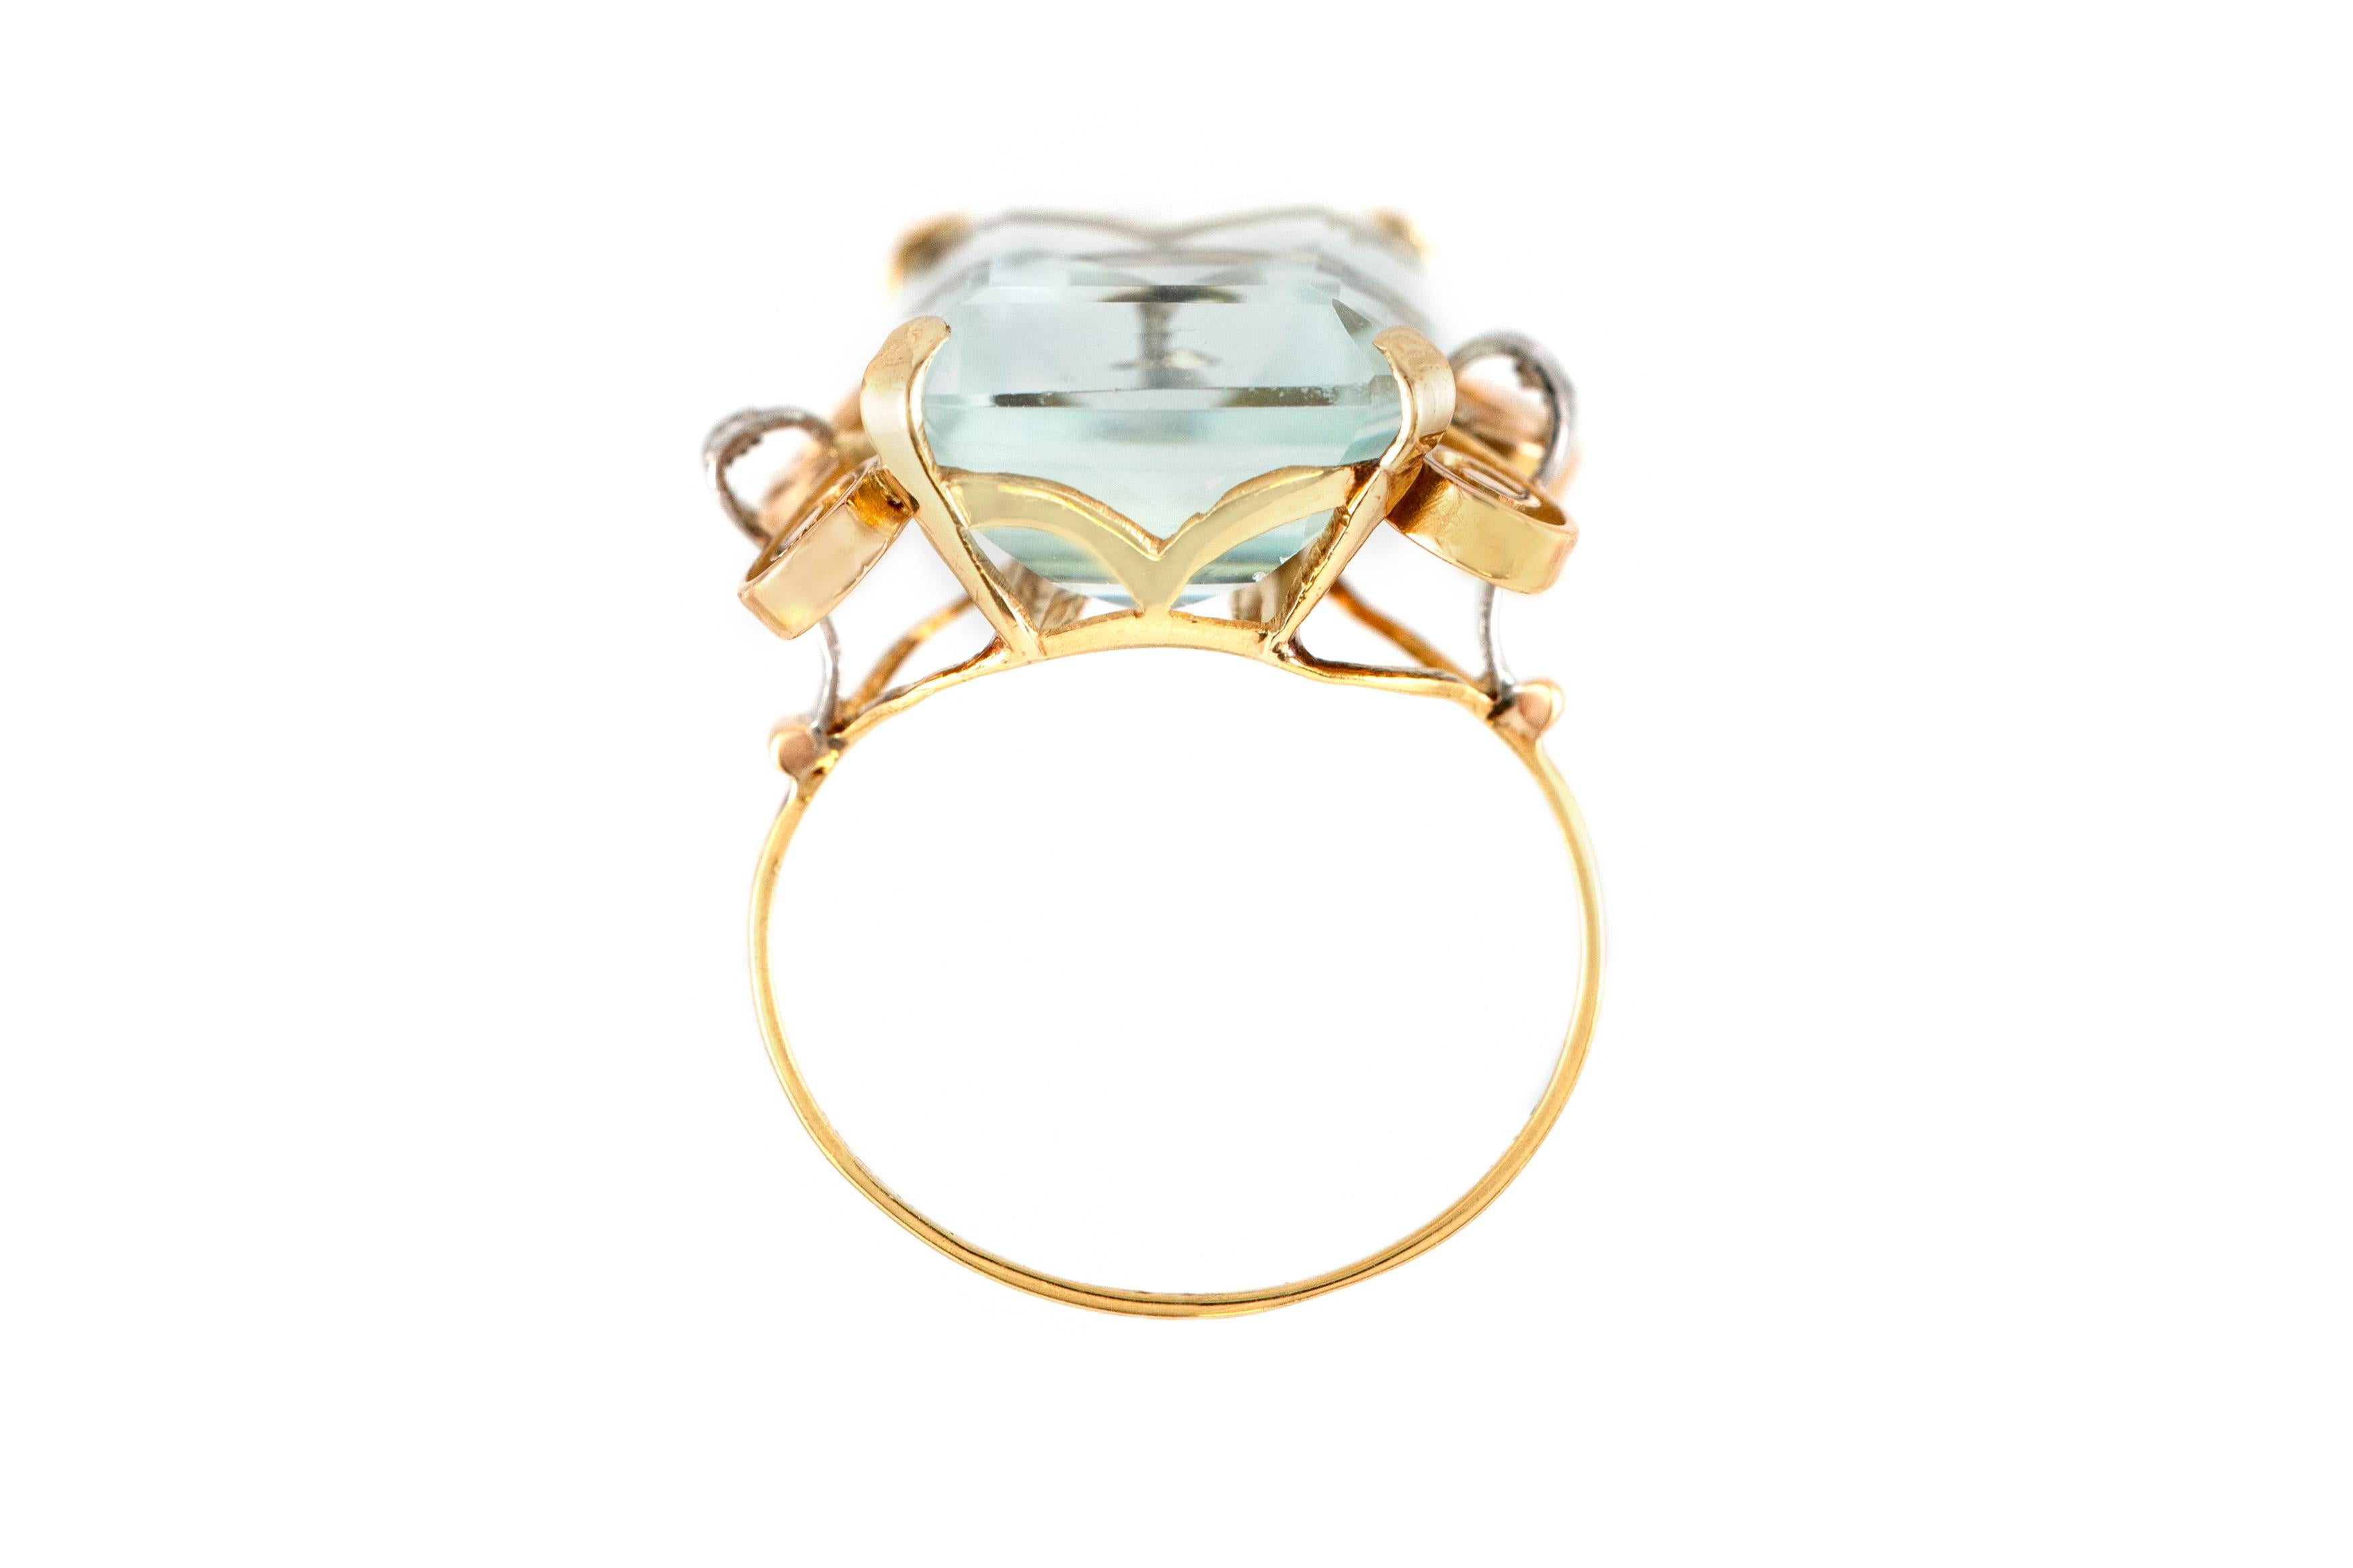 Der Ring ist fein in 18k Gelbgold mit zwei kleinen Diamanten an den Seiten und einem Aquamarin Zentrum Stein mit einem Gesamtgewicht von etwa 25,00 Karat gefertigt.